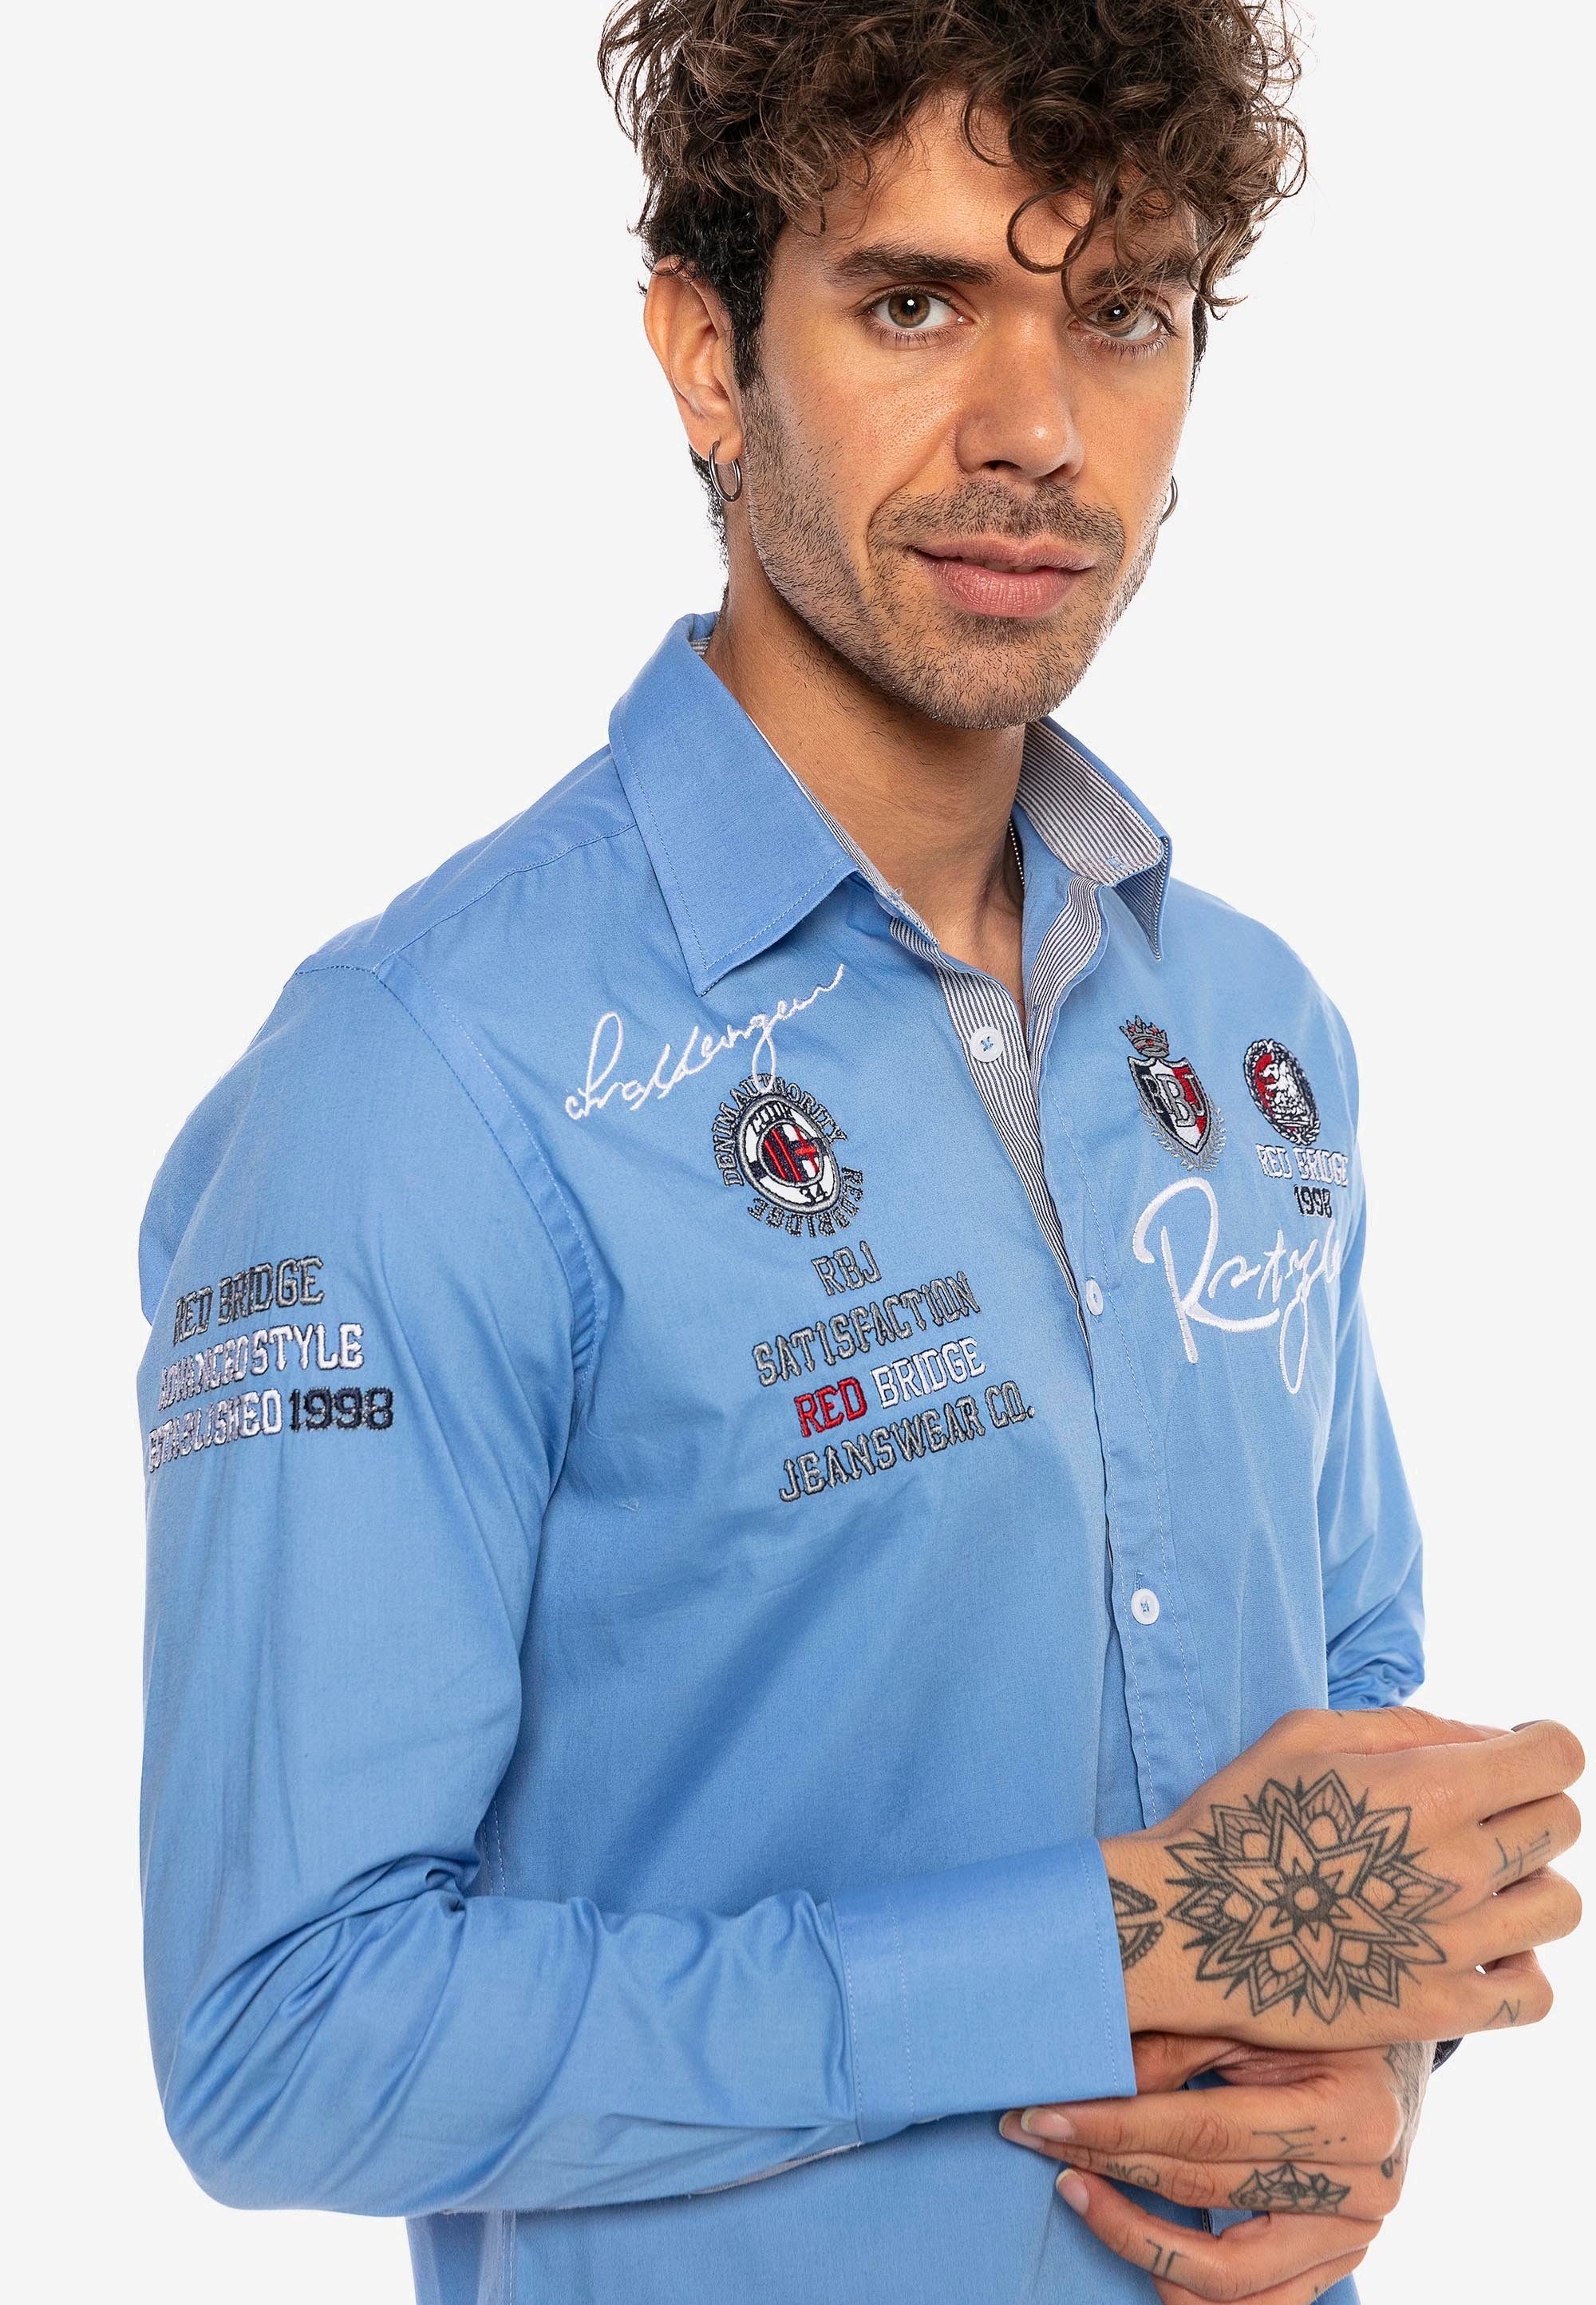 Jersey mit Slim Stickerei im Langarmhemd Fit-Schnitt blau-blau City RedBridge